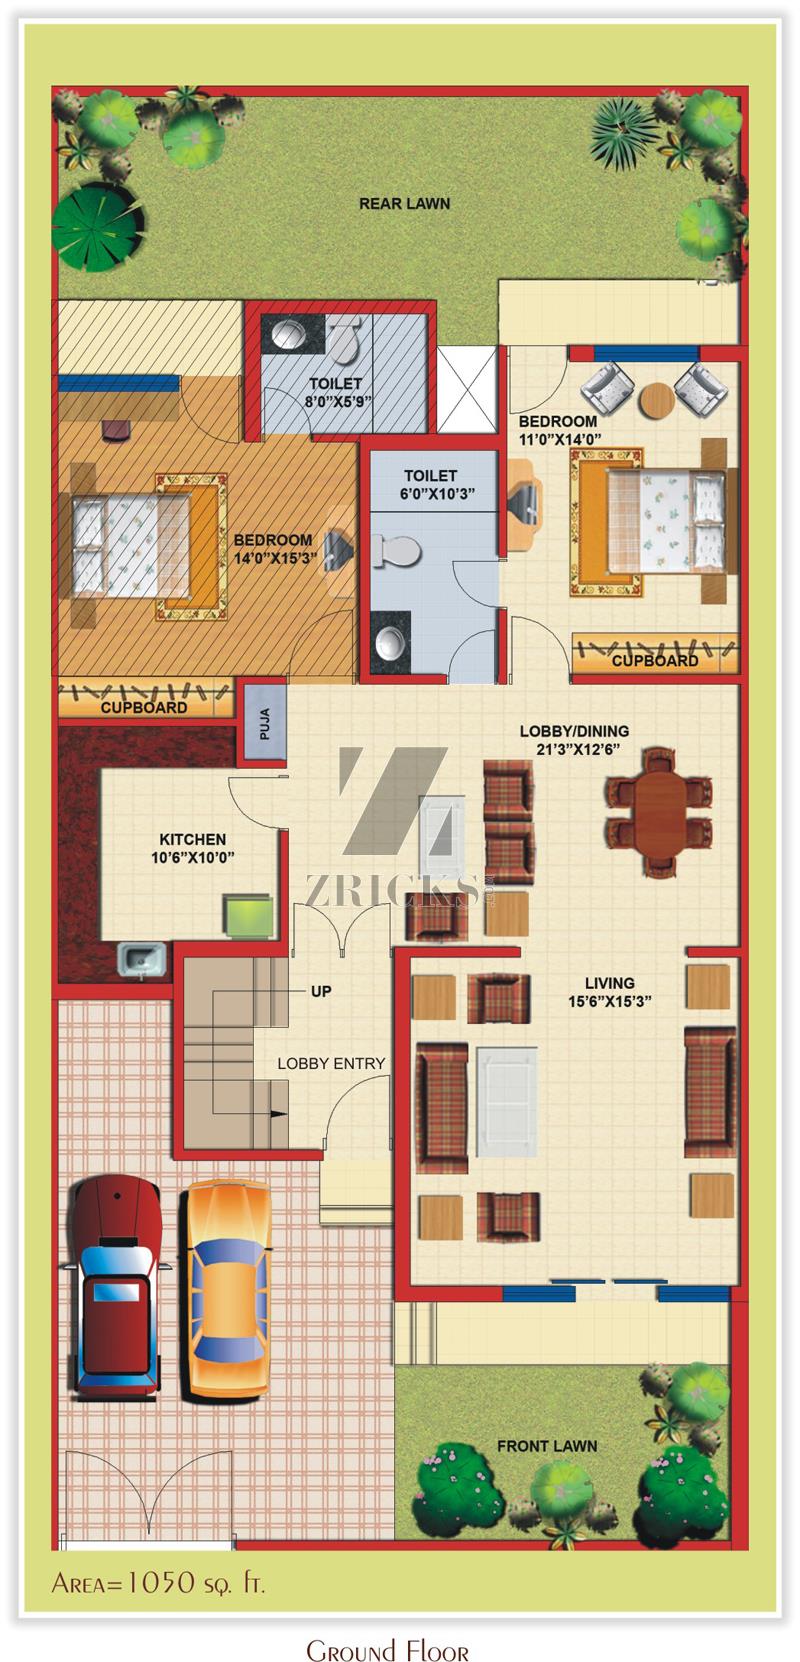 TDI City Villas Floor Plan